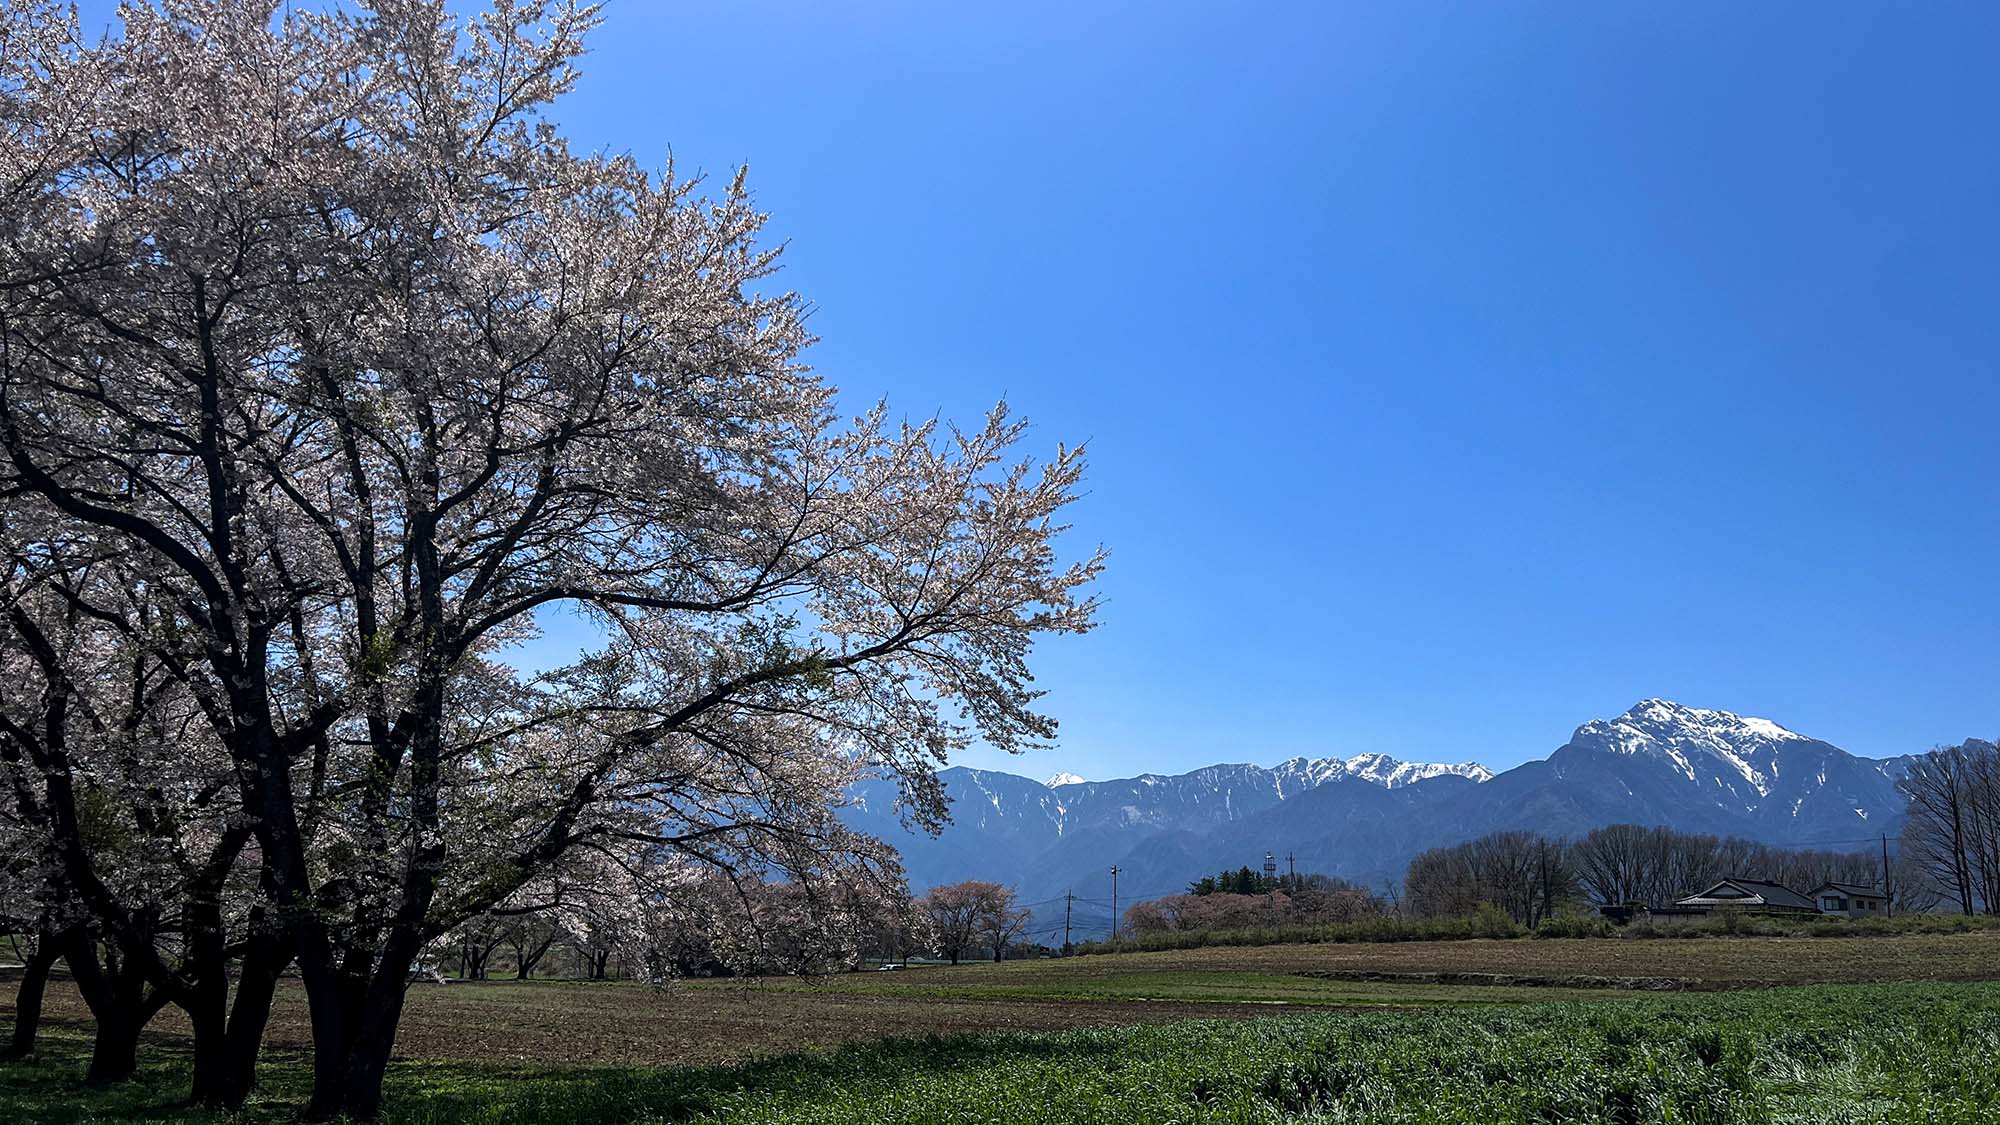 【蕪の桜並木】広い草原に樹齢40年のソメイヨシノが咲き並びます